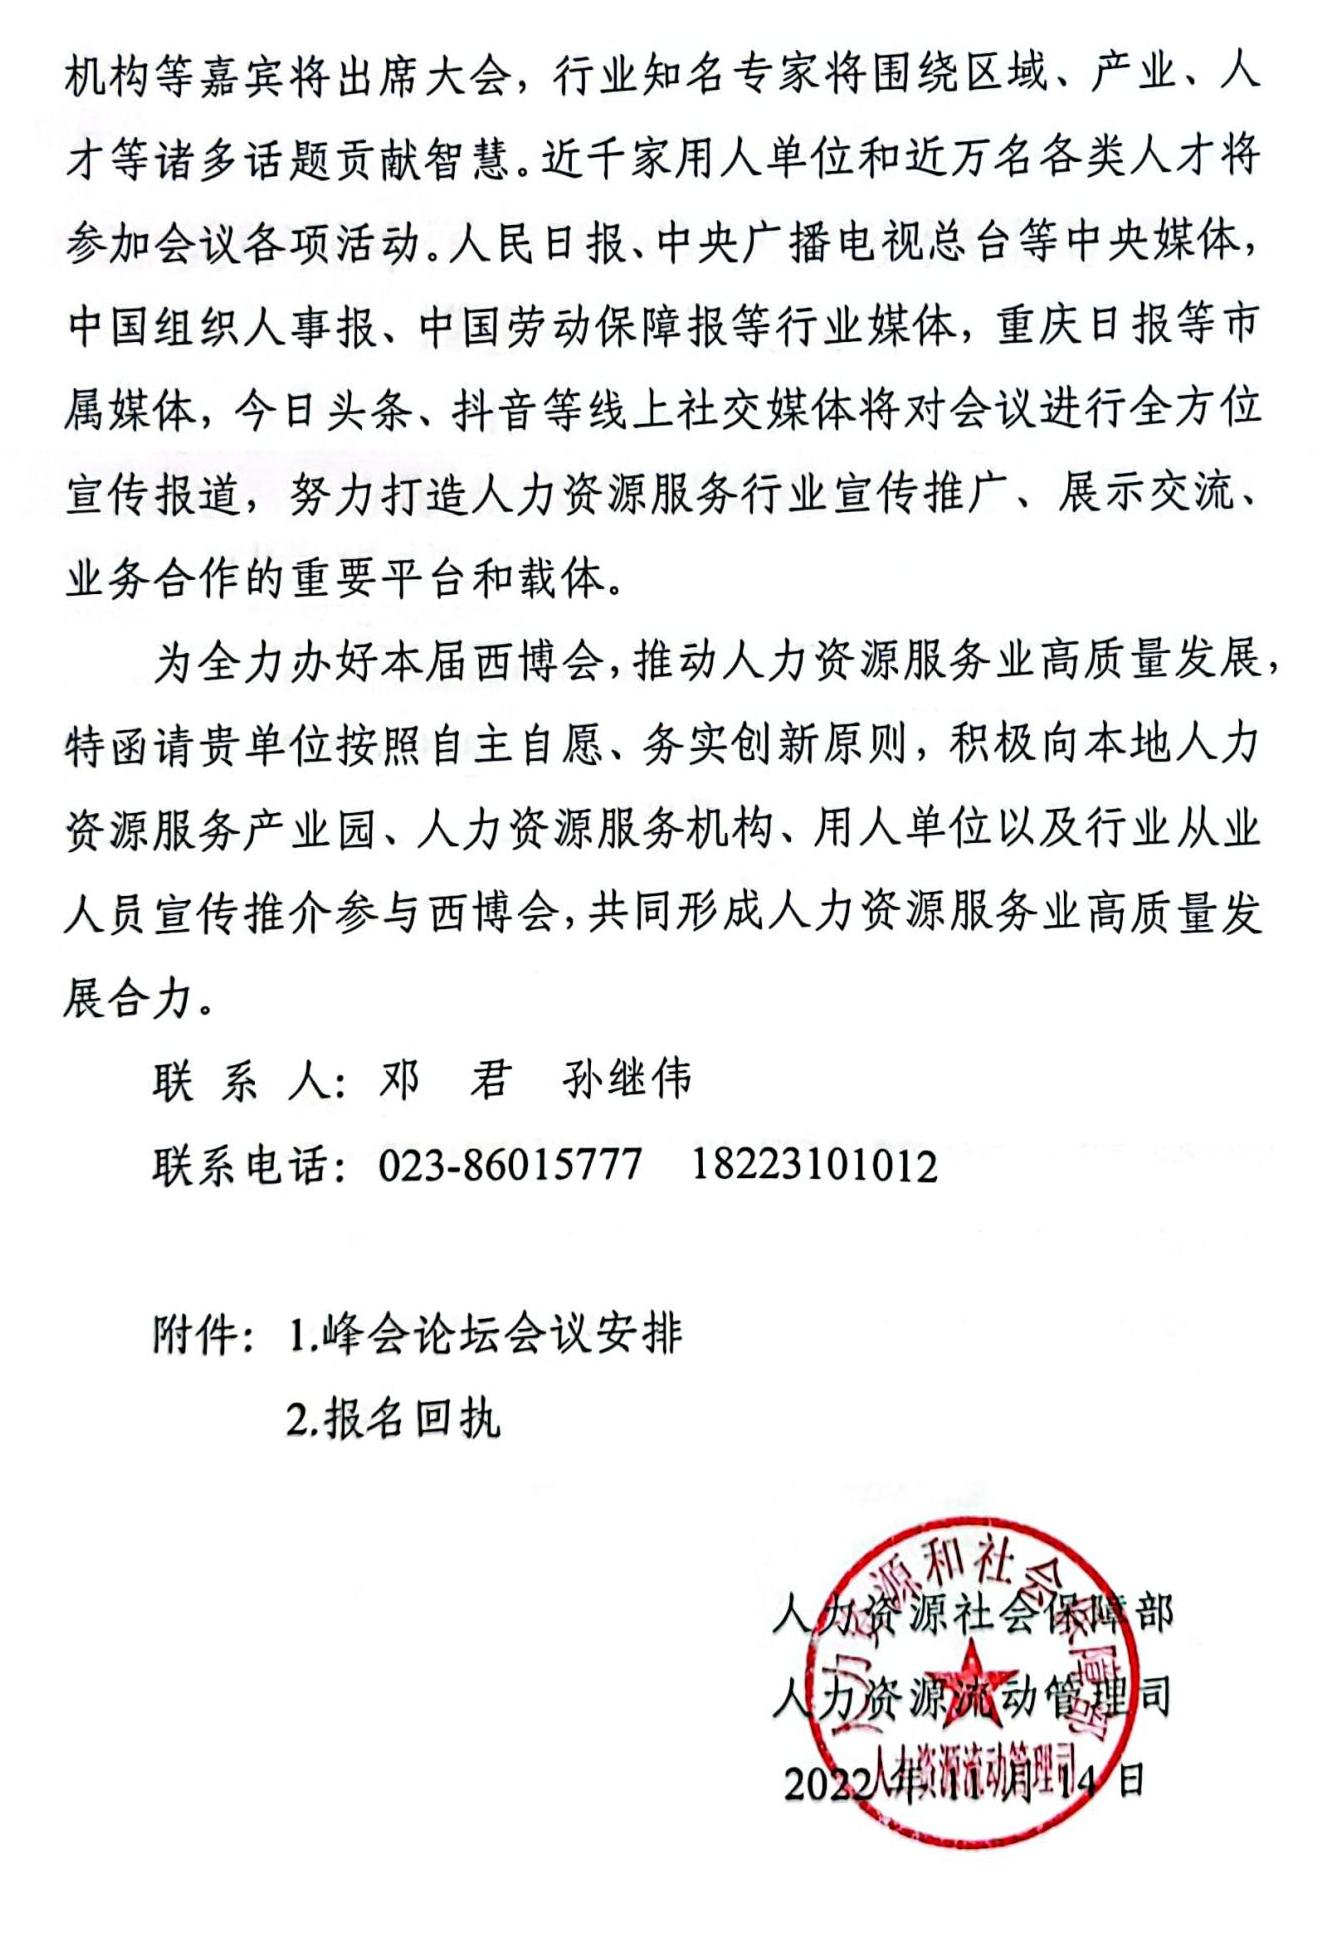 关于邀请参加2022第四届中国（西部）人力资源服务博览会的函_01.jpg